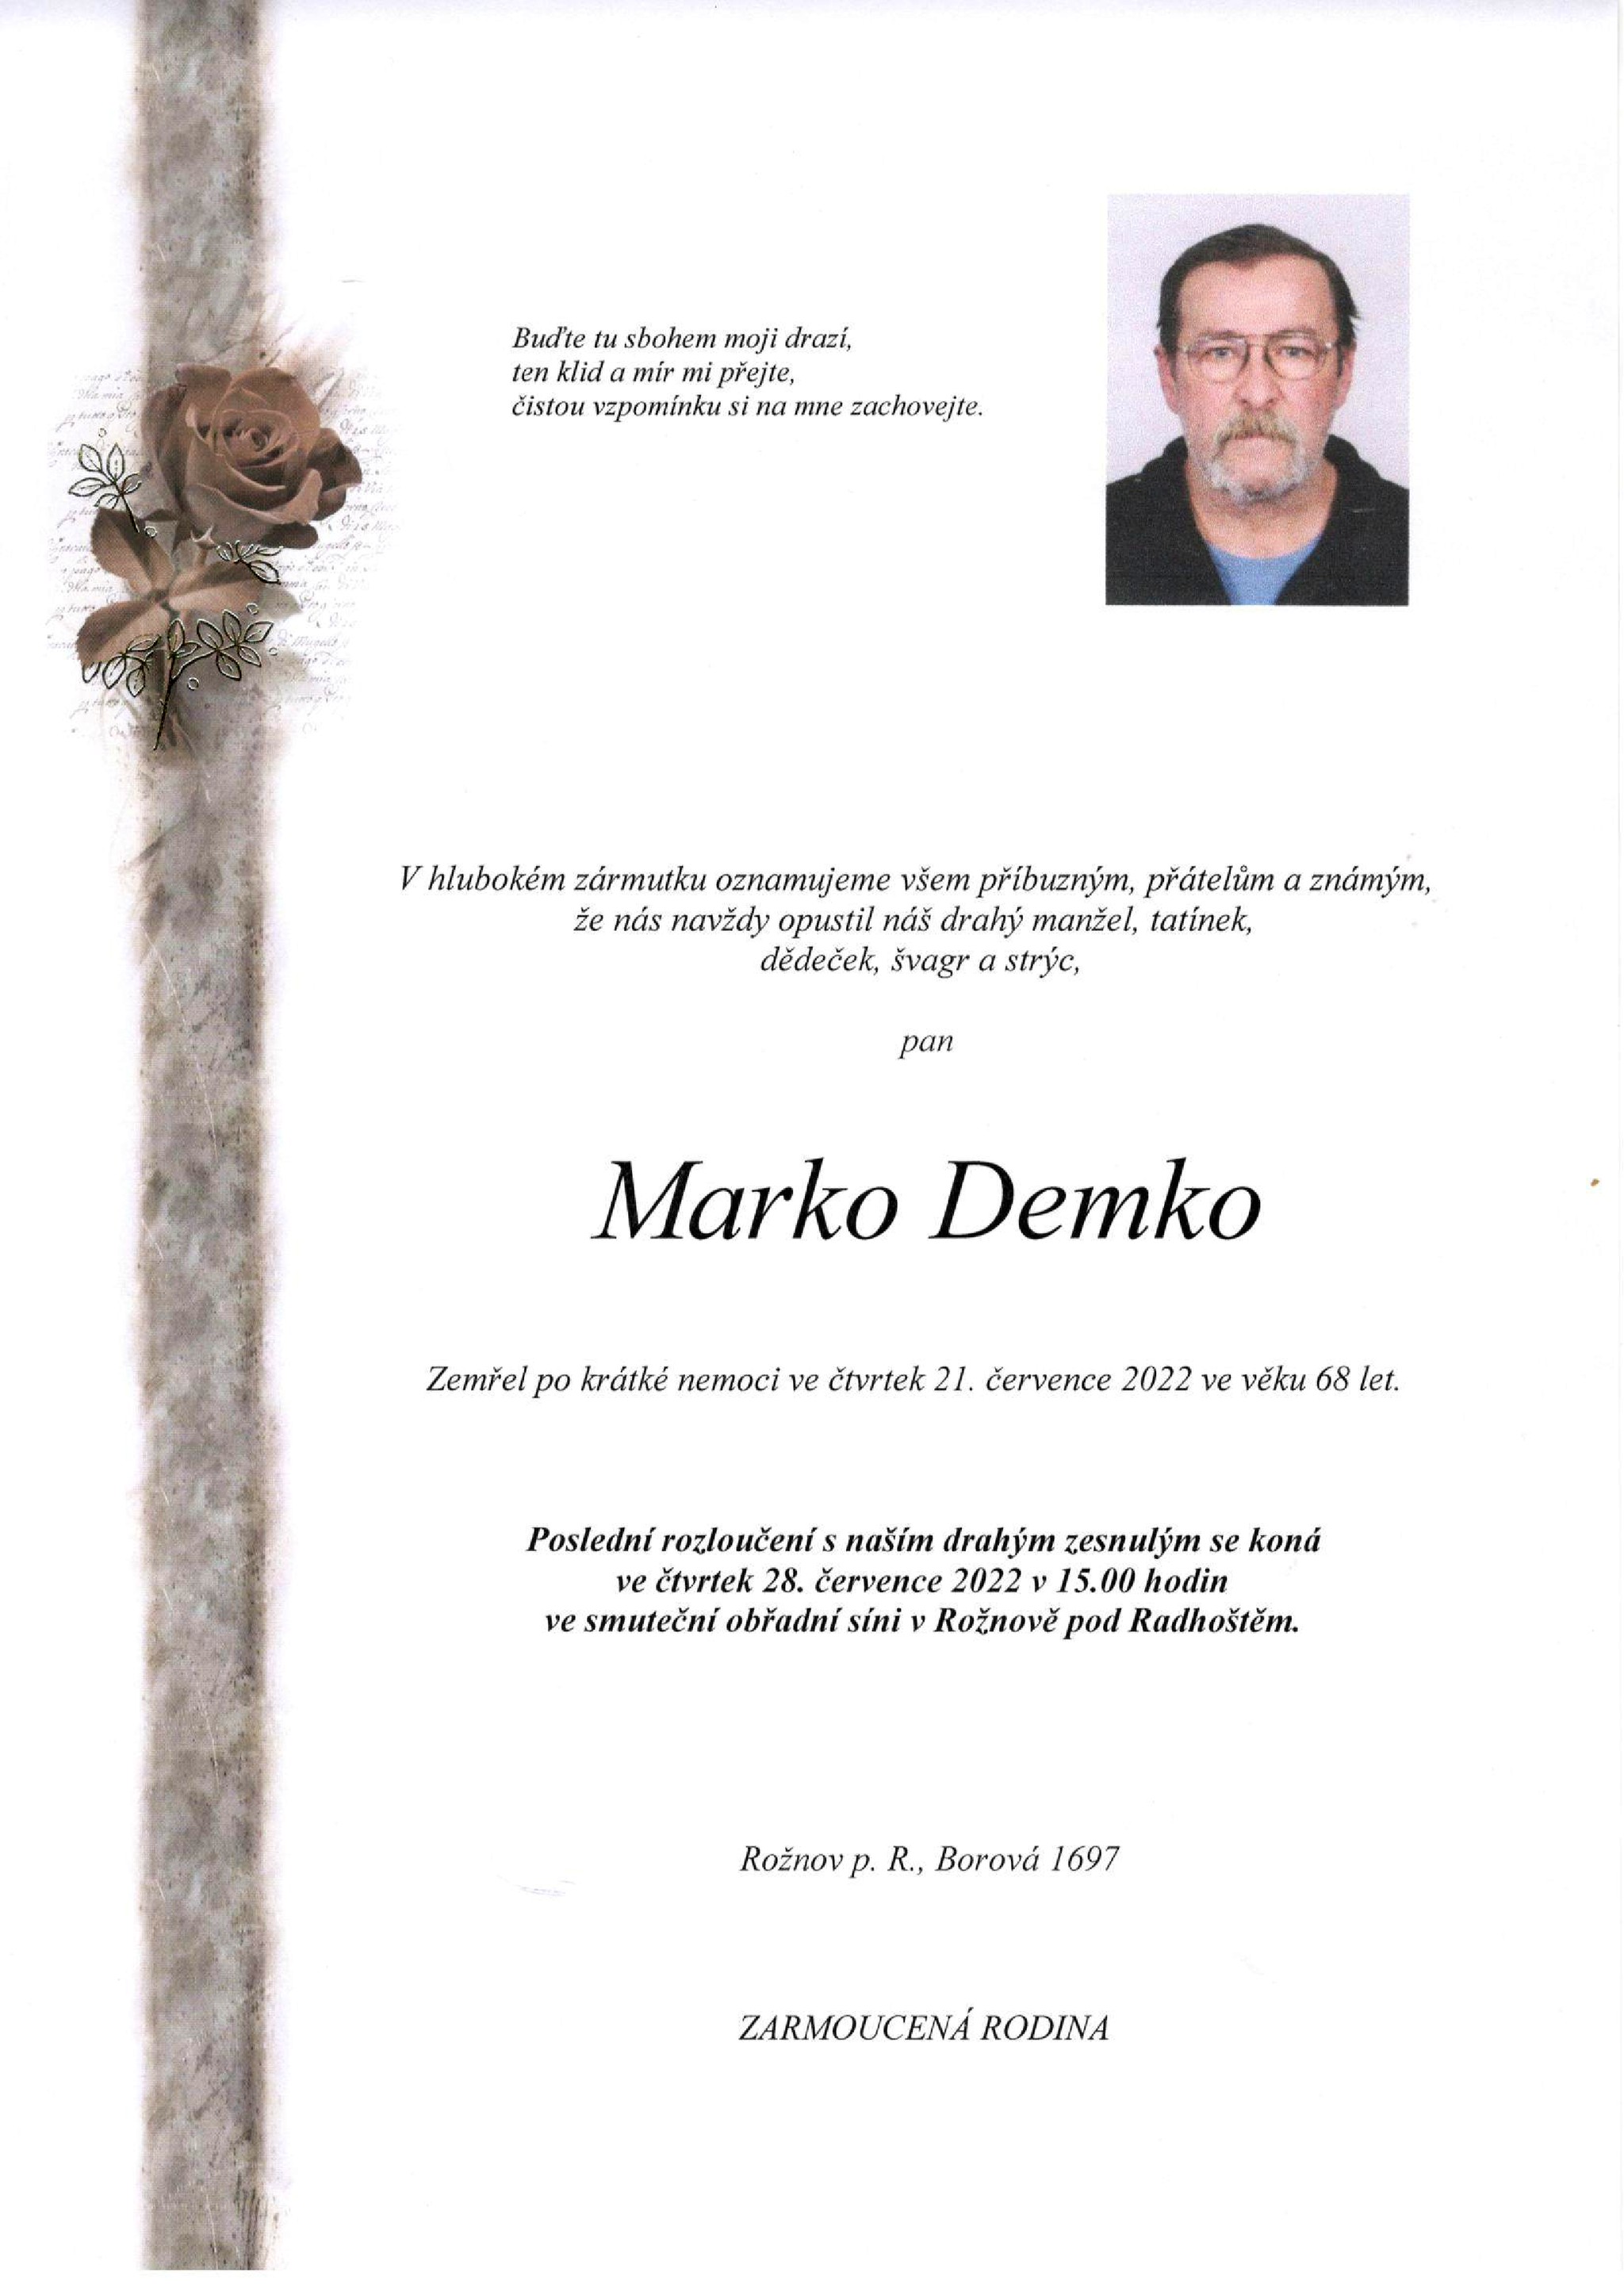 Marko Demko